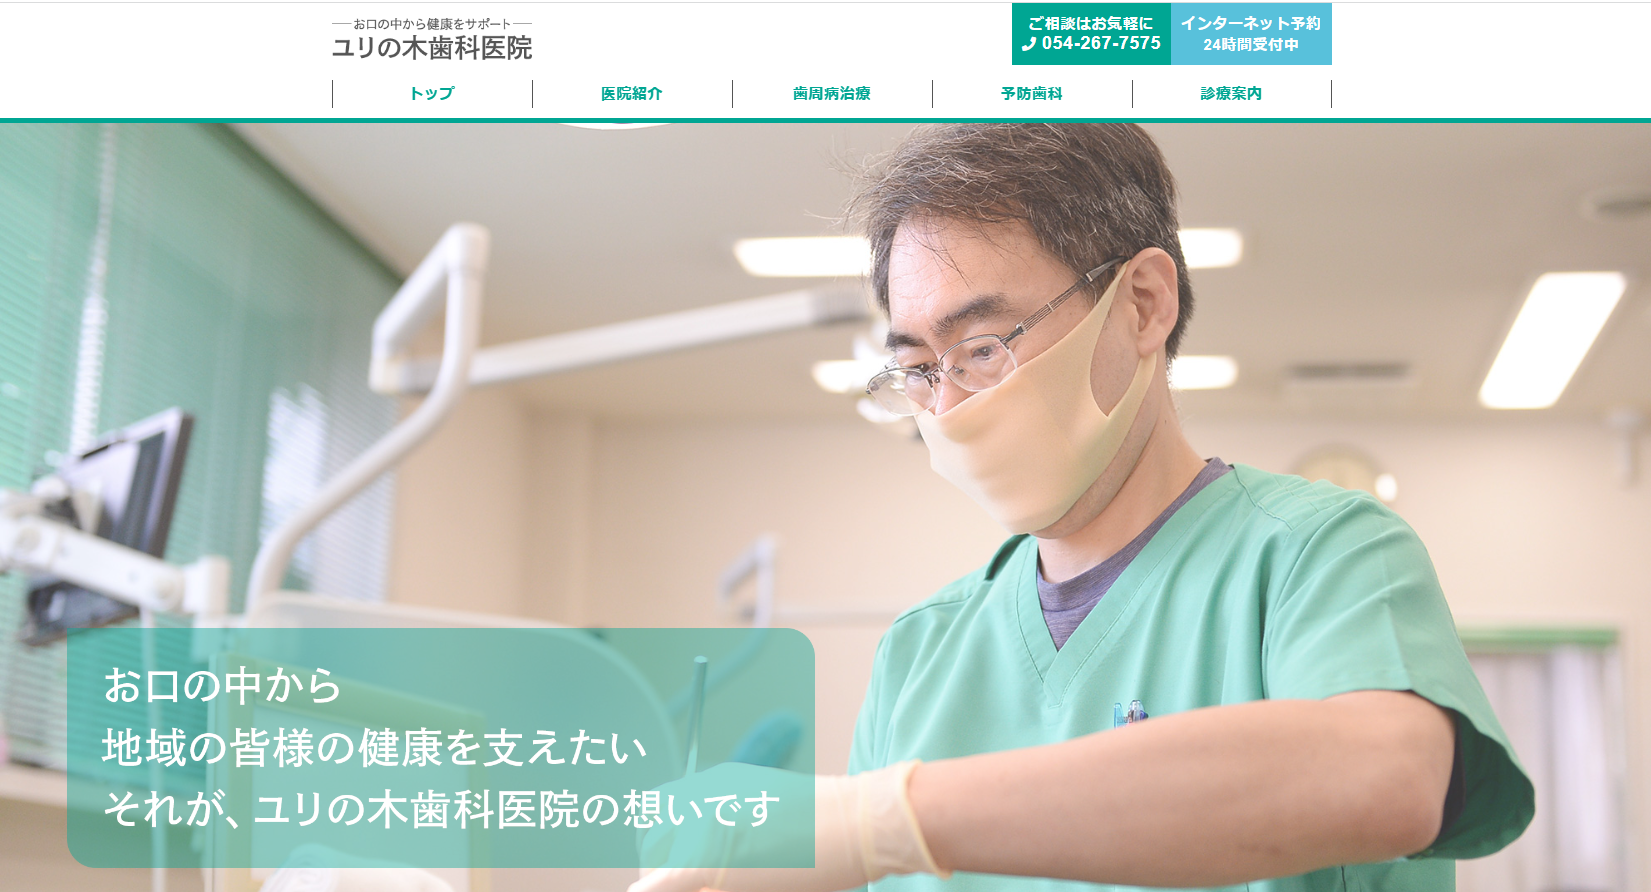 静岡市の予防歯科診療におすすめの歯科クリニック5選 ユリの木歯科医院